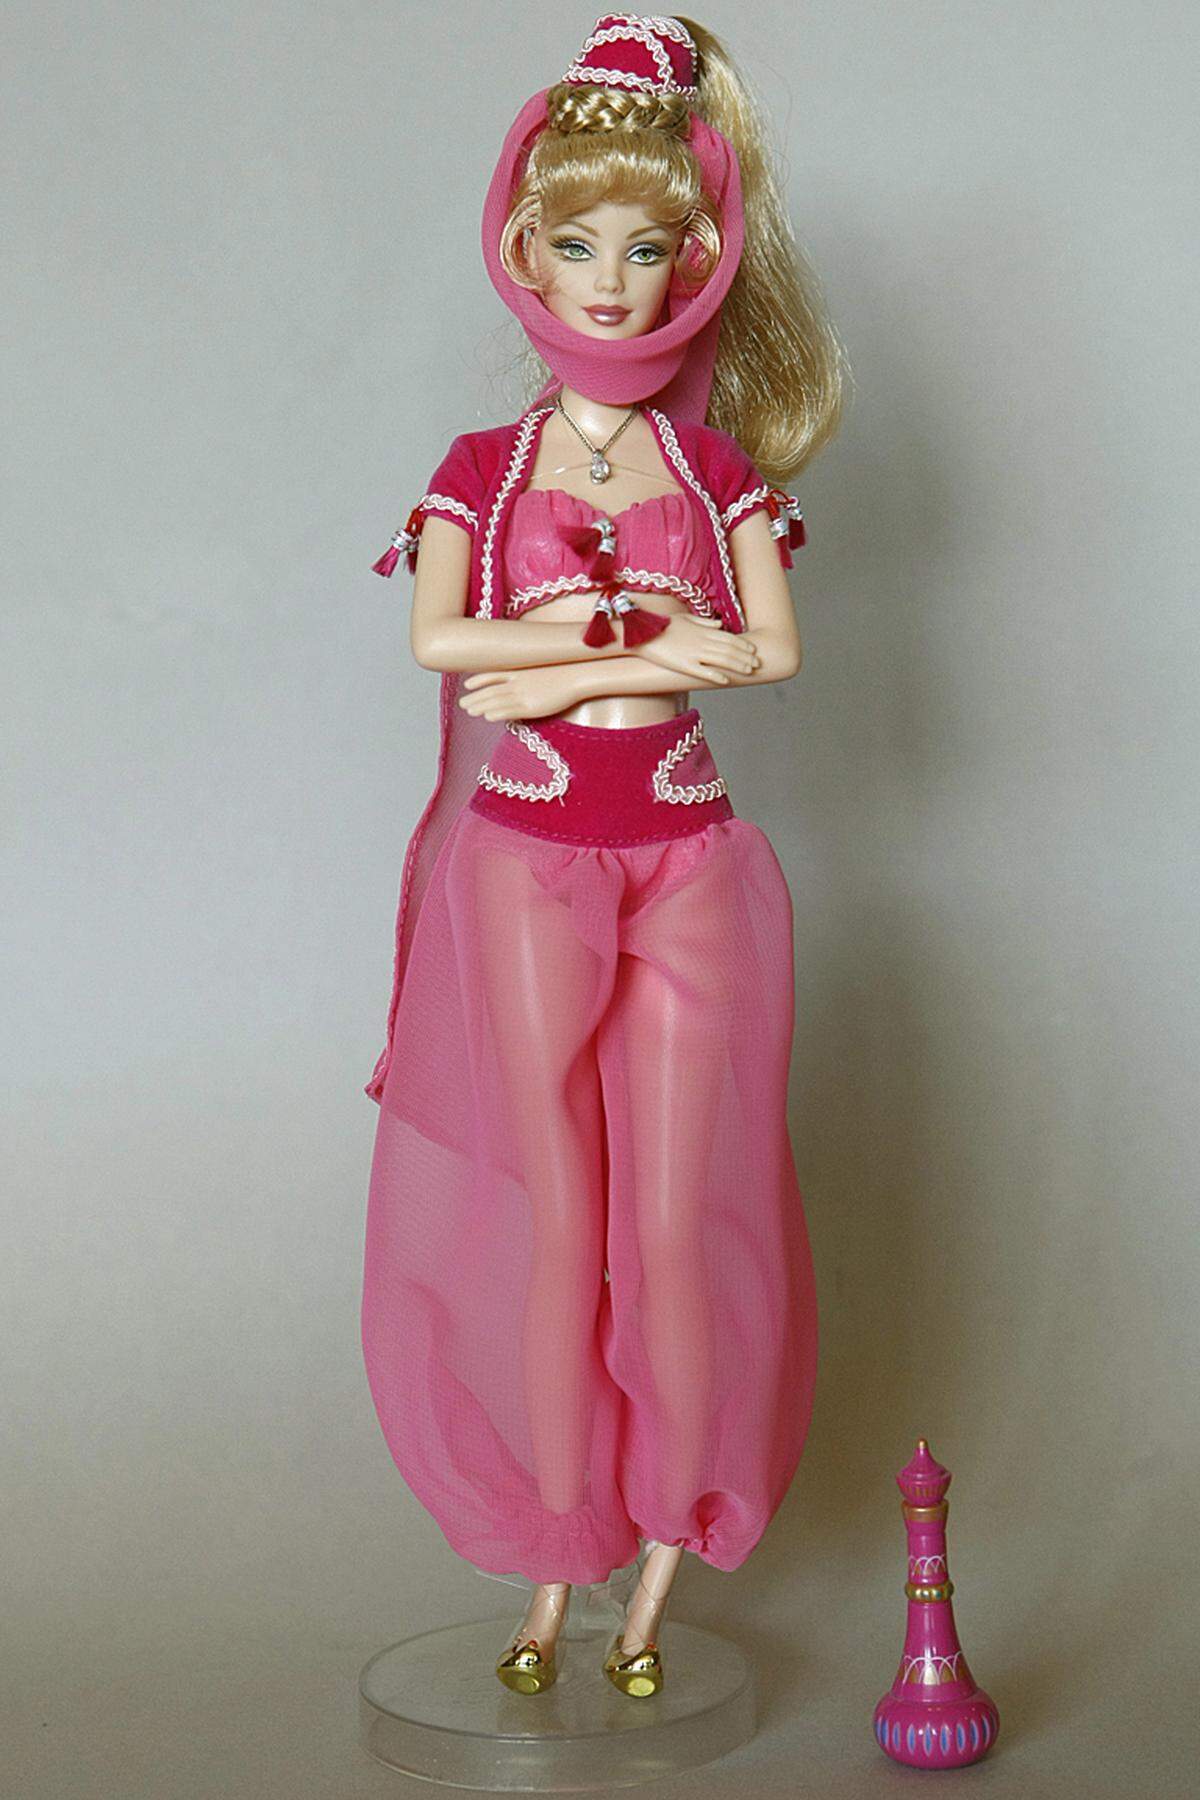 ... ein Plastik-Ebenbild. Sie befindet sich im Eigentum von Bettina Dorfmann, die mehr als 6000 Barbie-Puppen ihr Eigen nennt und damit eine der größten Sammlungen der Welt besitzt.